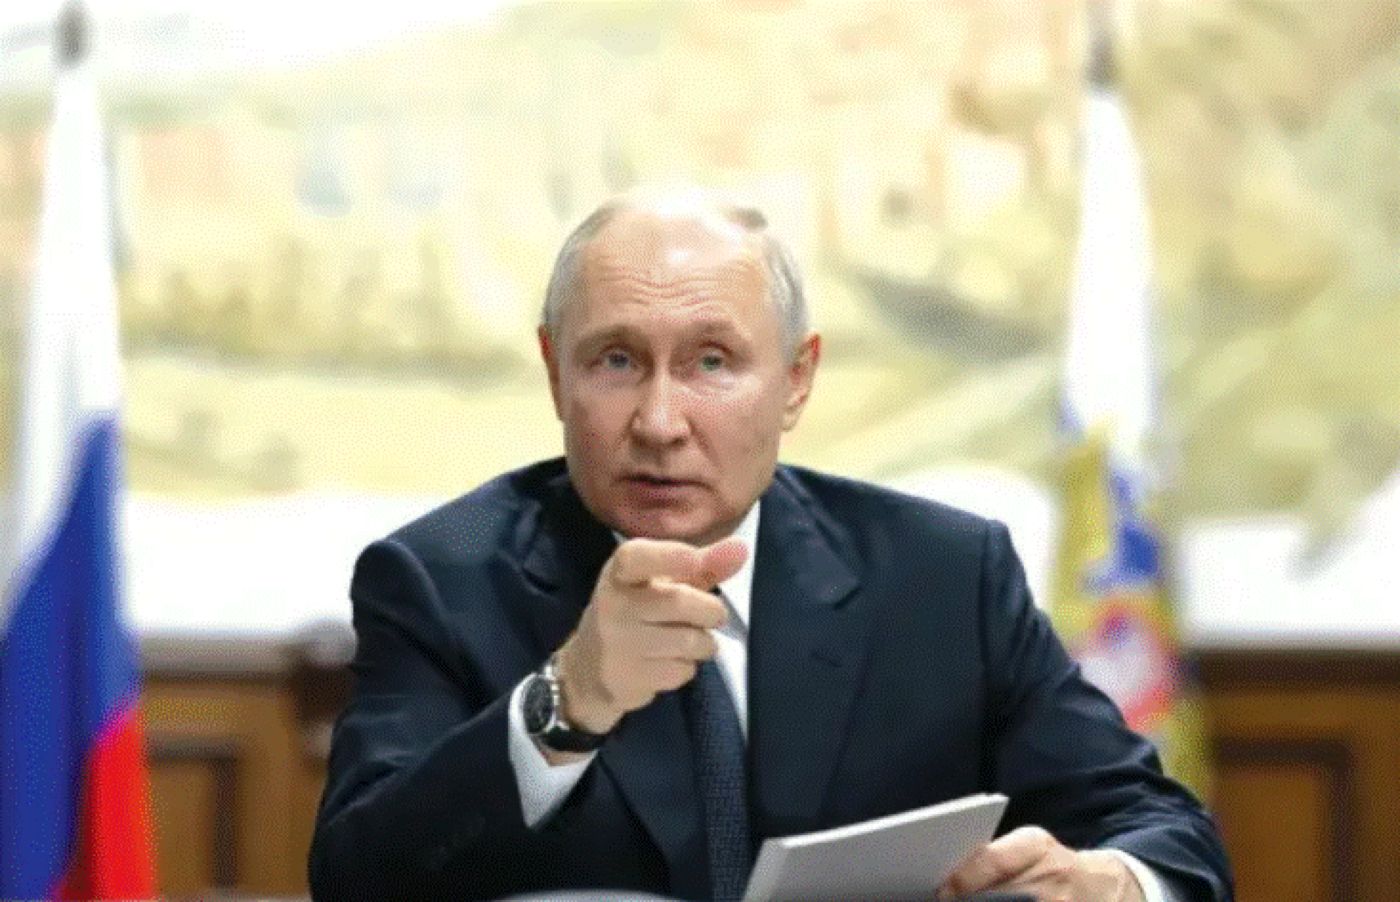 Anunțul momentului. Putin intervine în războiul Israel – Gaza și impune schimbarea strategiei de luptă. Se apropie Al 3-lea Război Mondial?